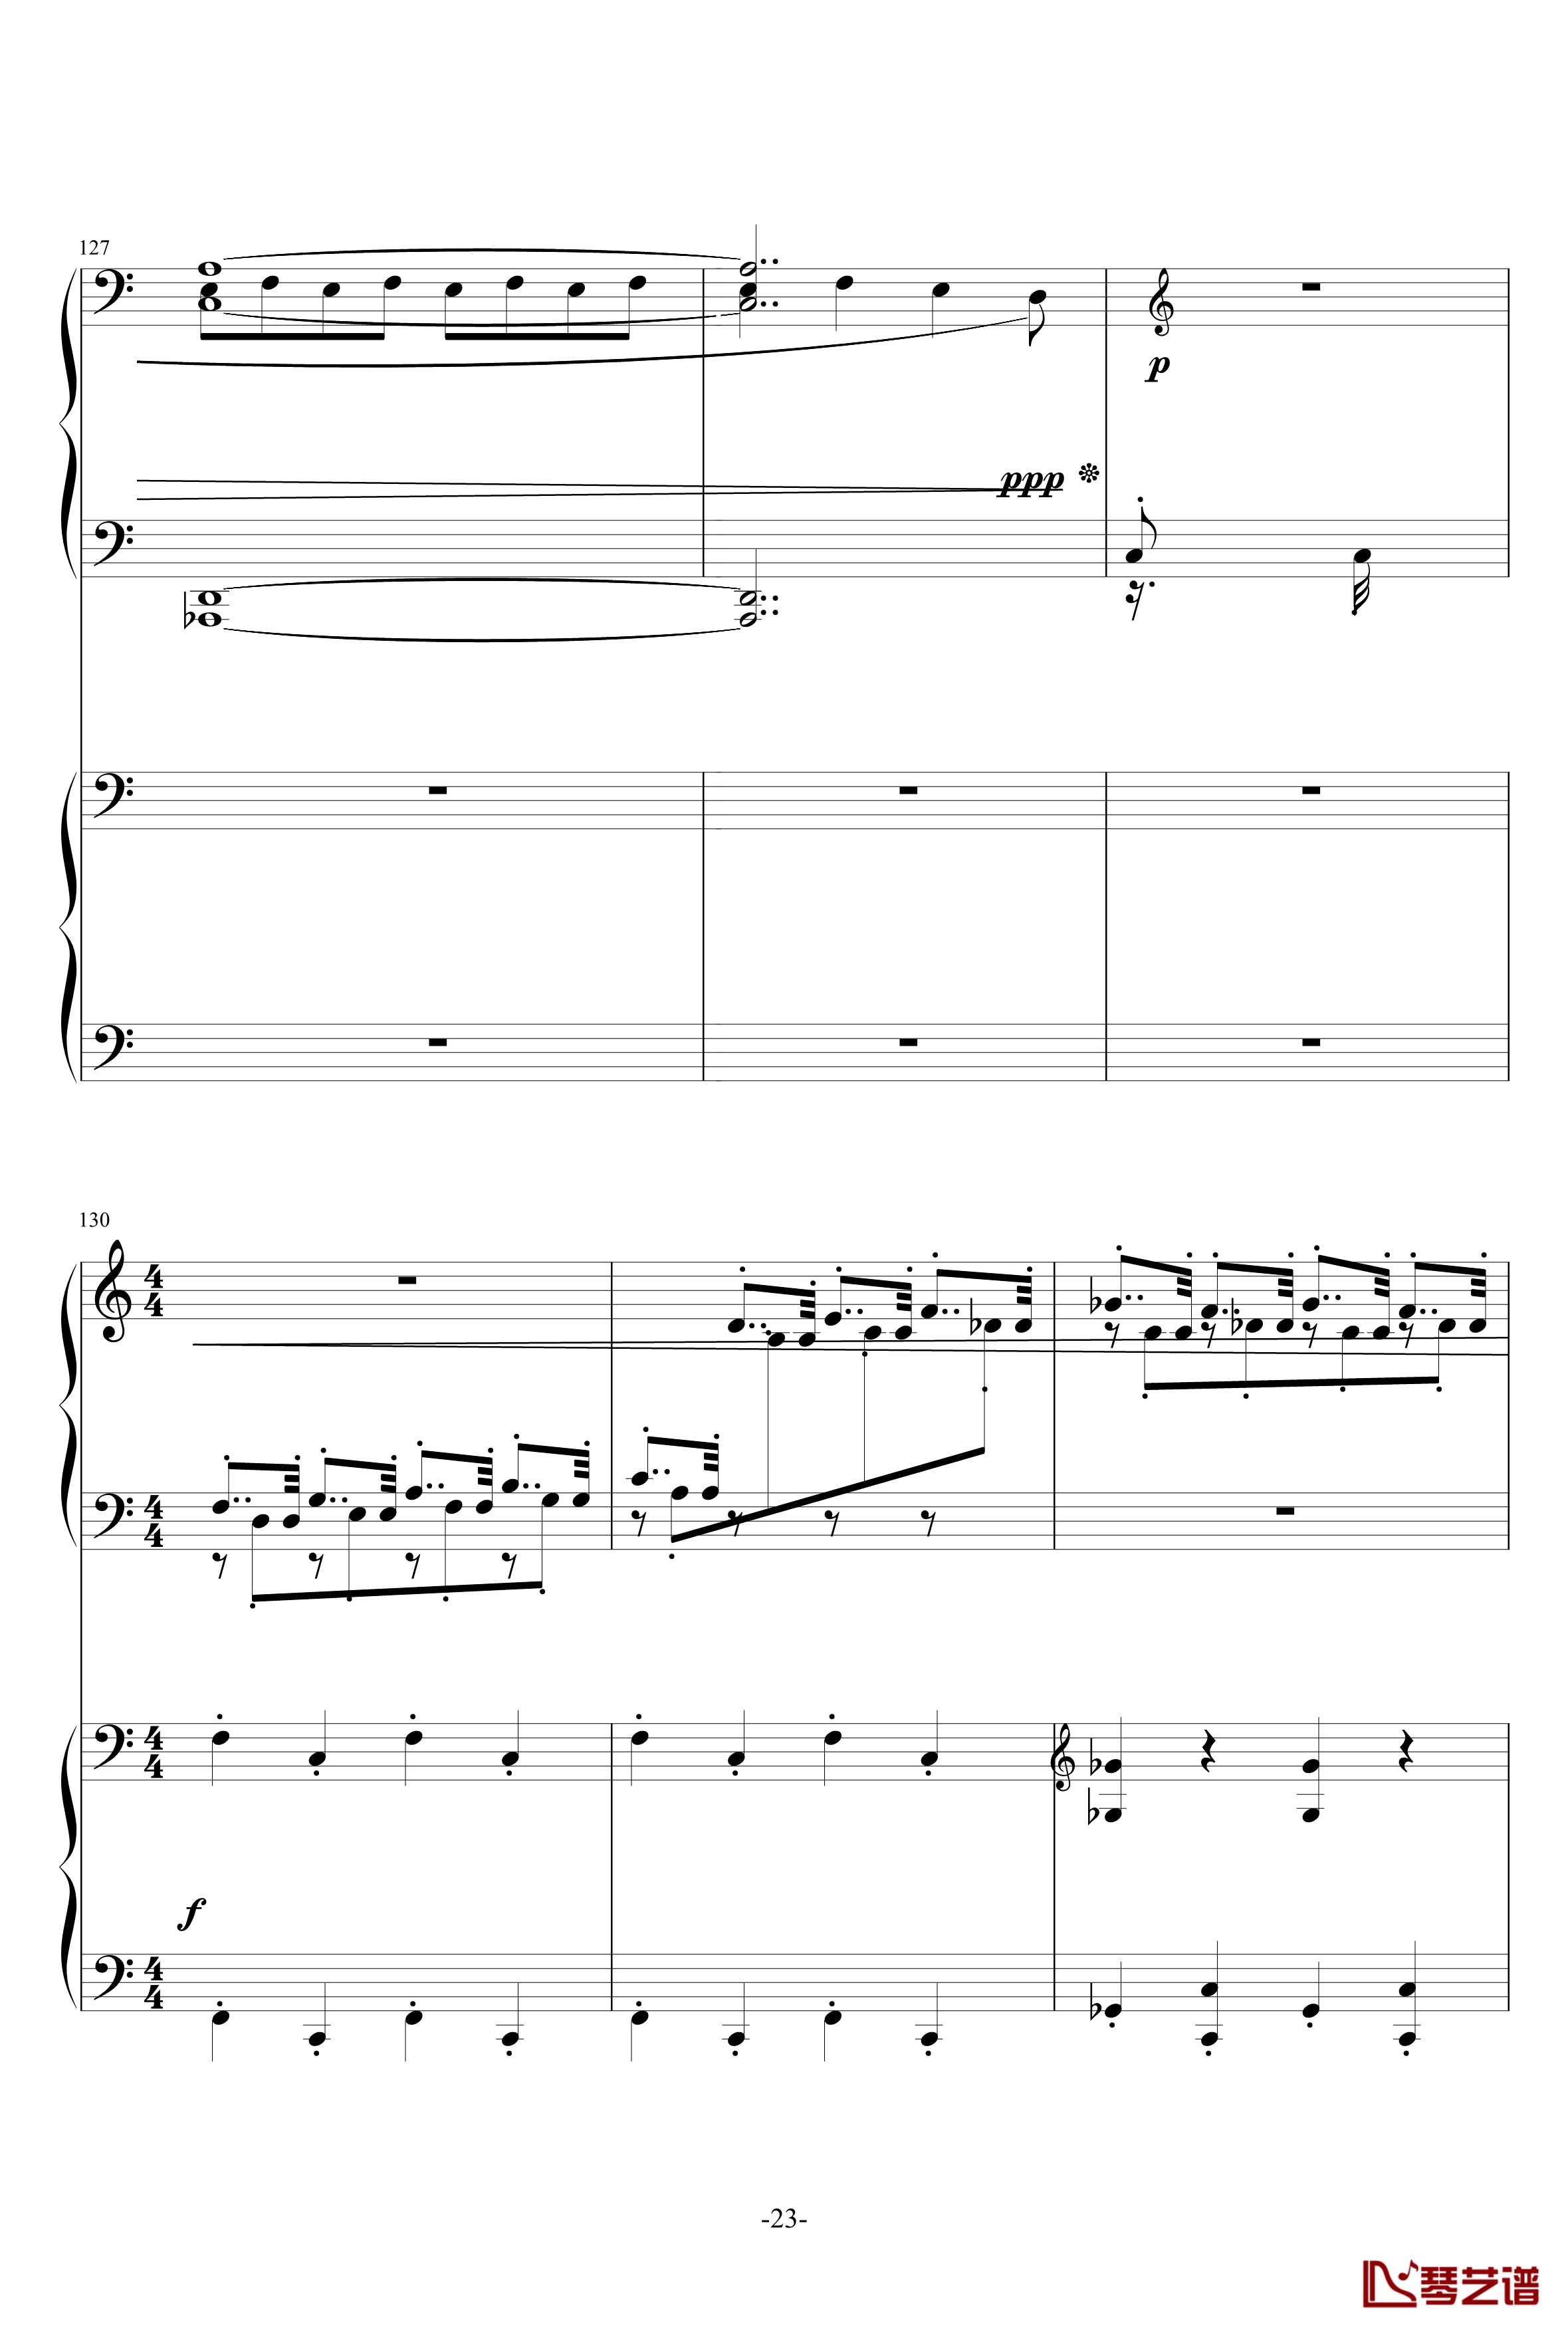 普罗科菲耶夫第三钢琴协奏曲第二乐章钢琴谱23